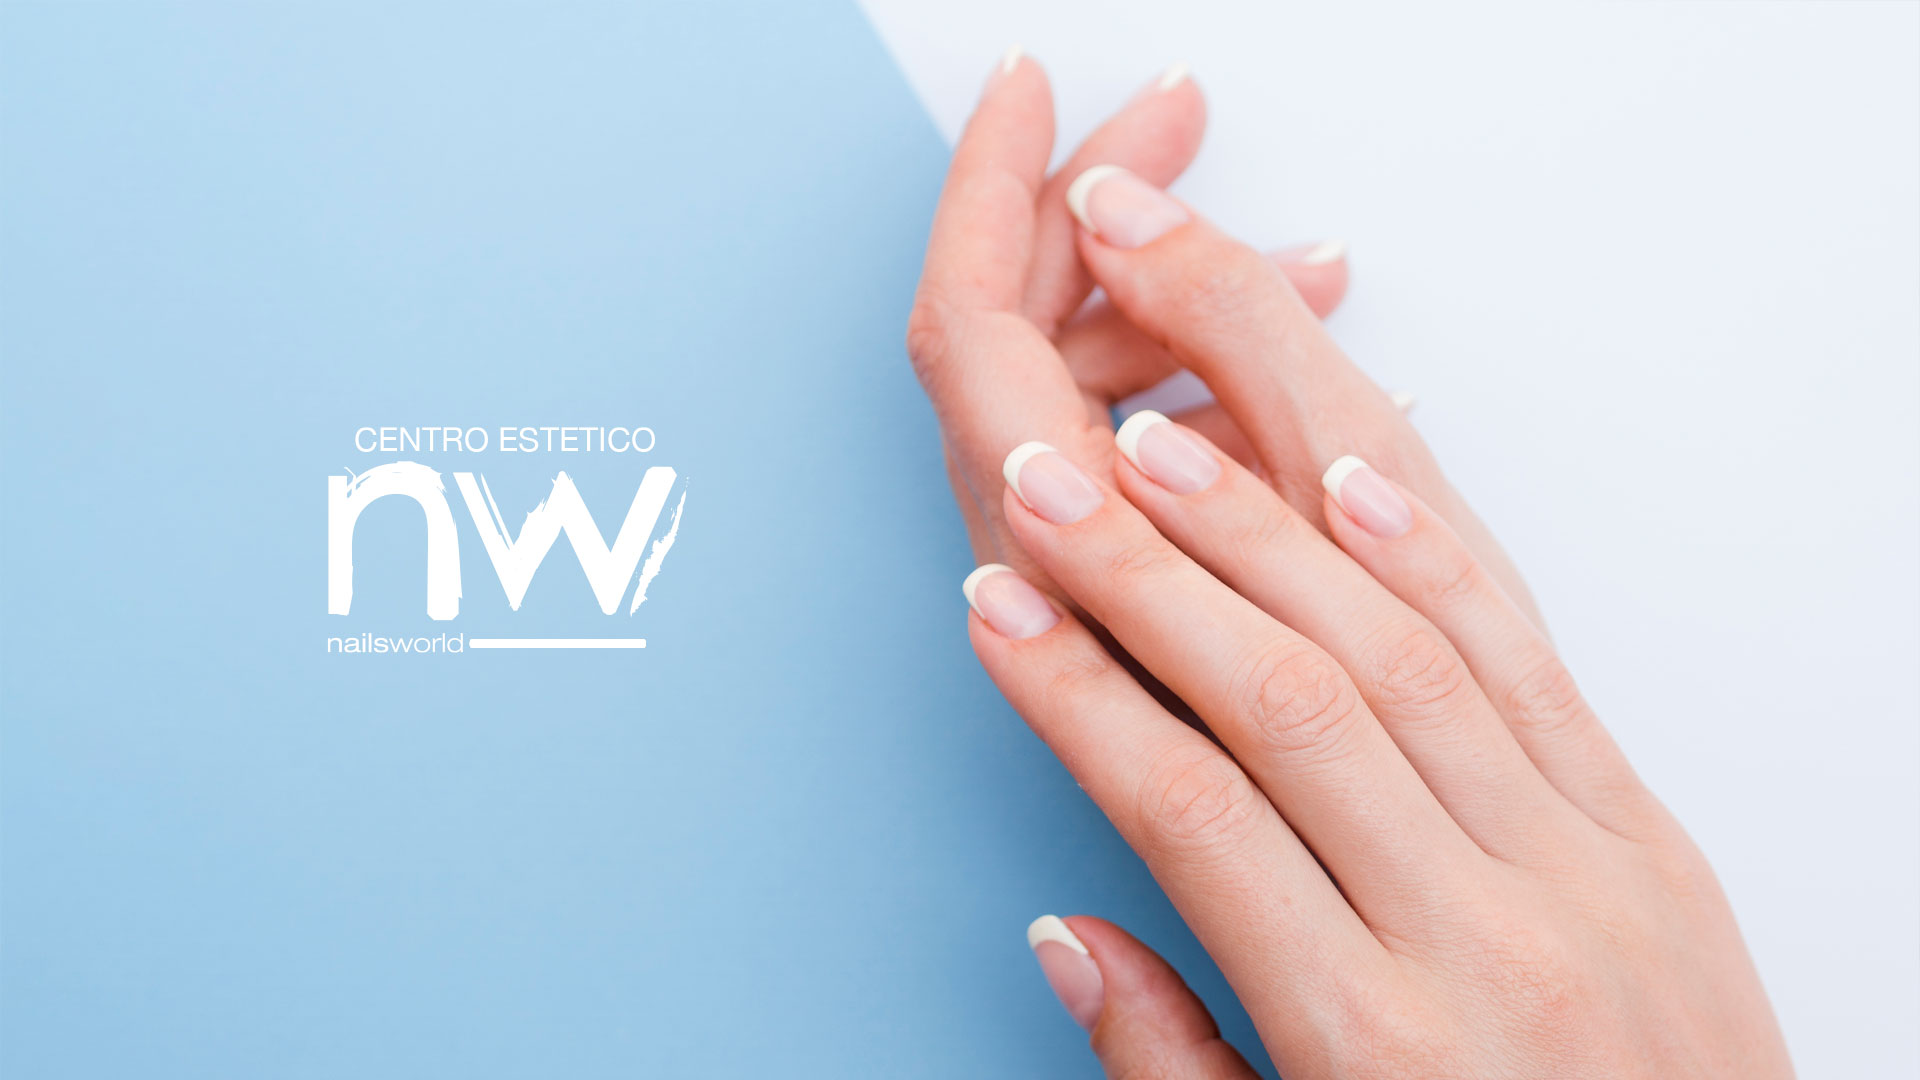 cnw slide 04 - Estetica Nailsworld